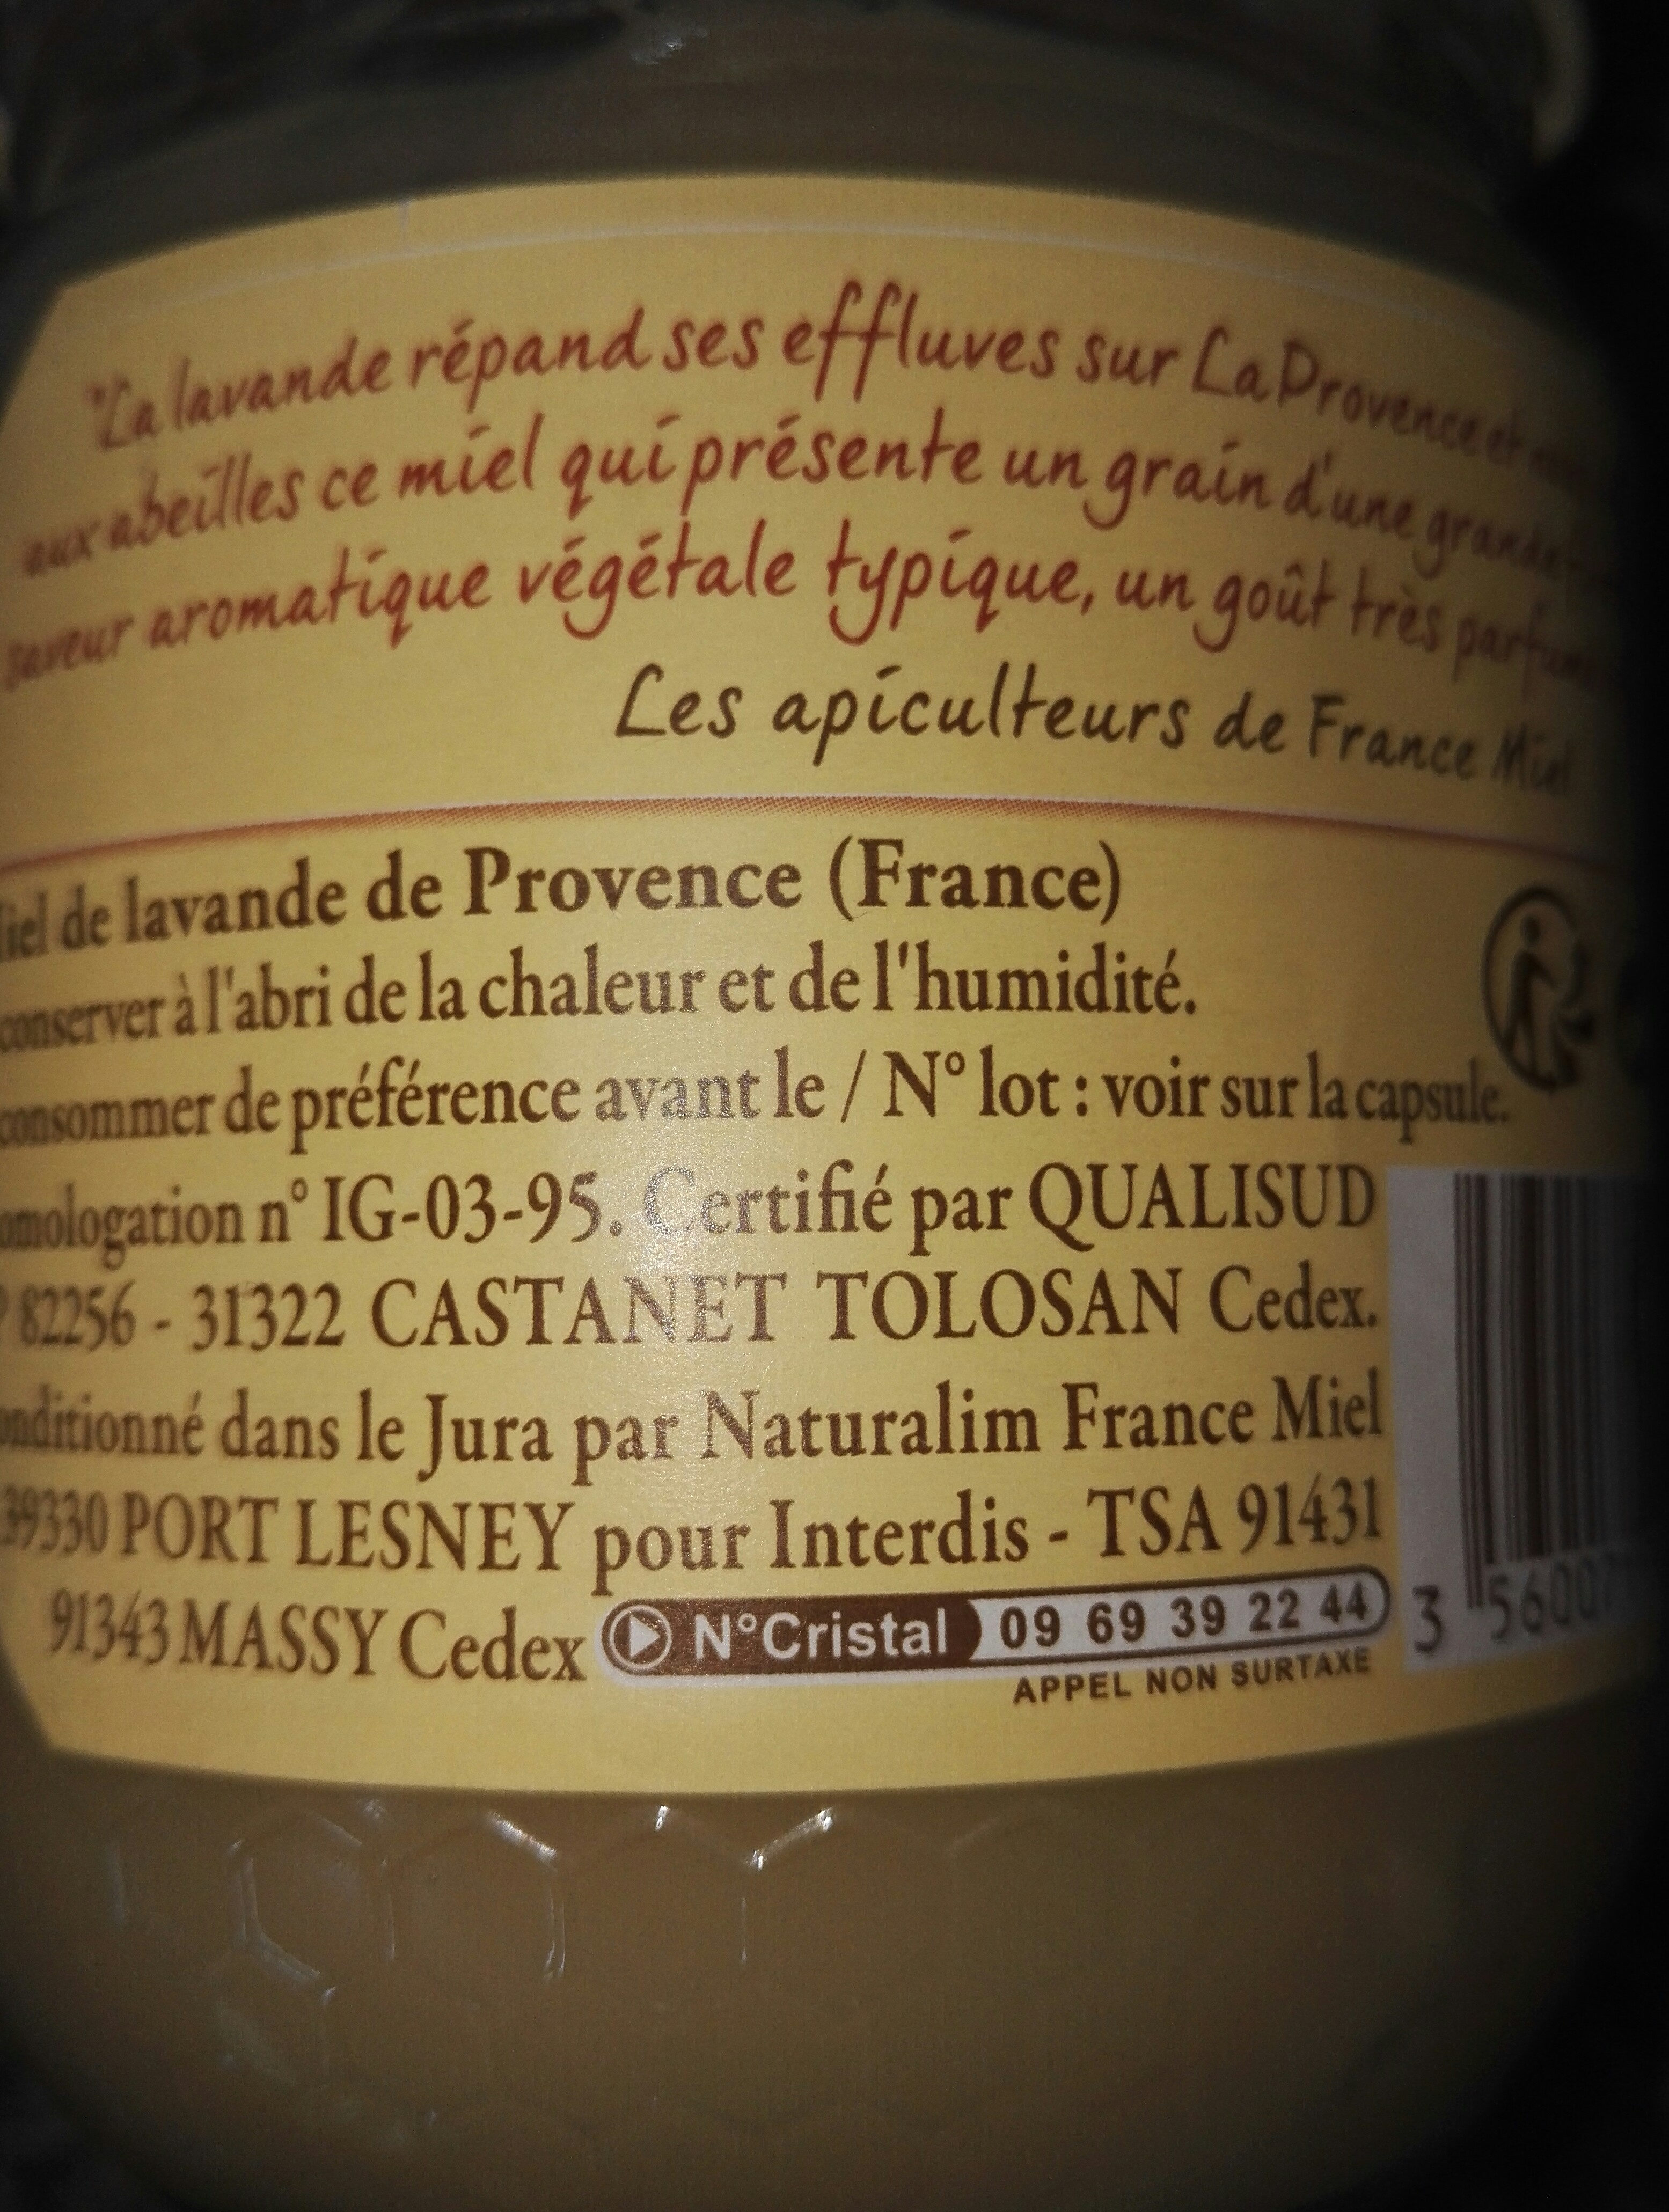 miel de lavande de provence - Ingredients - fr